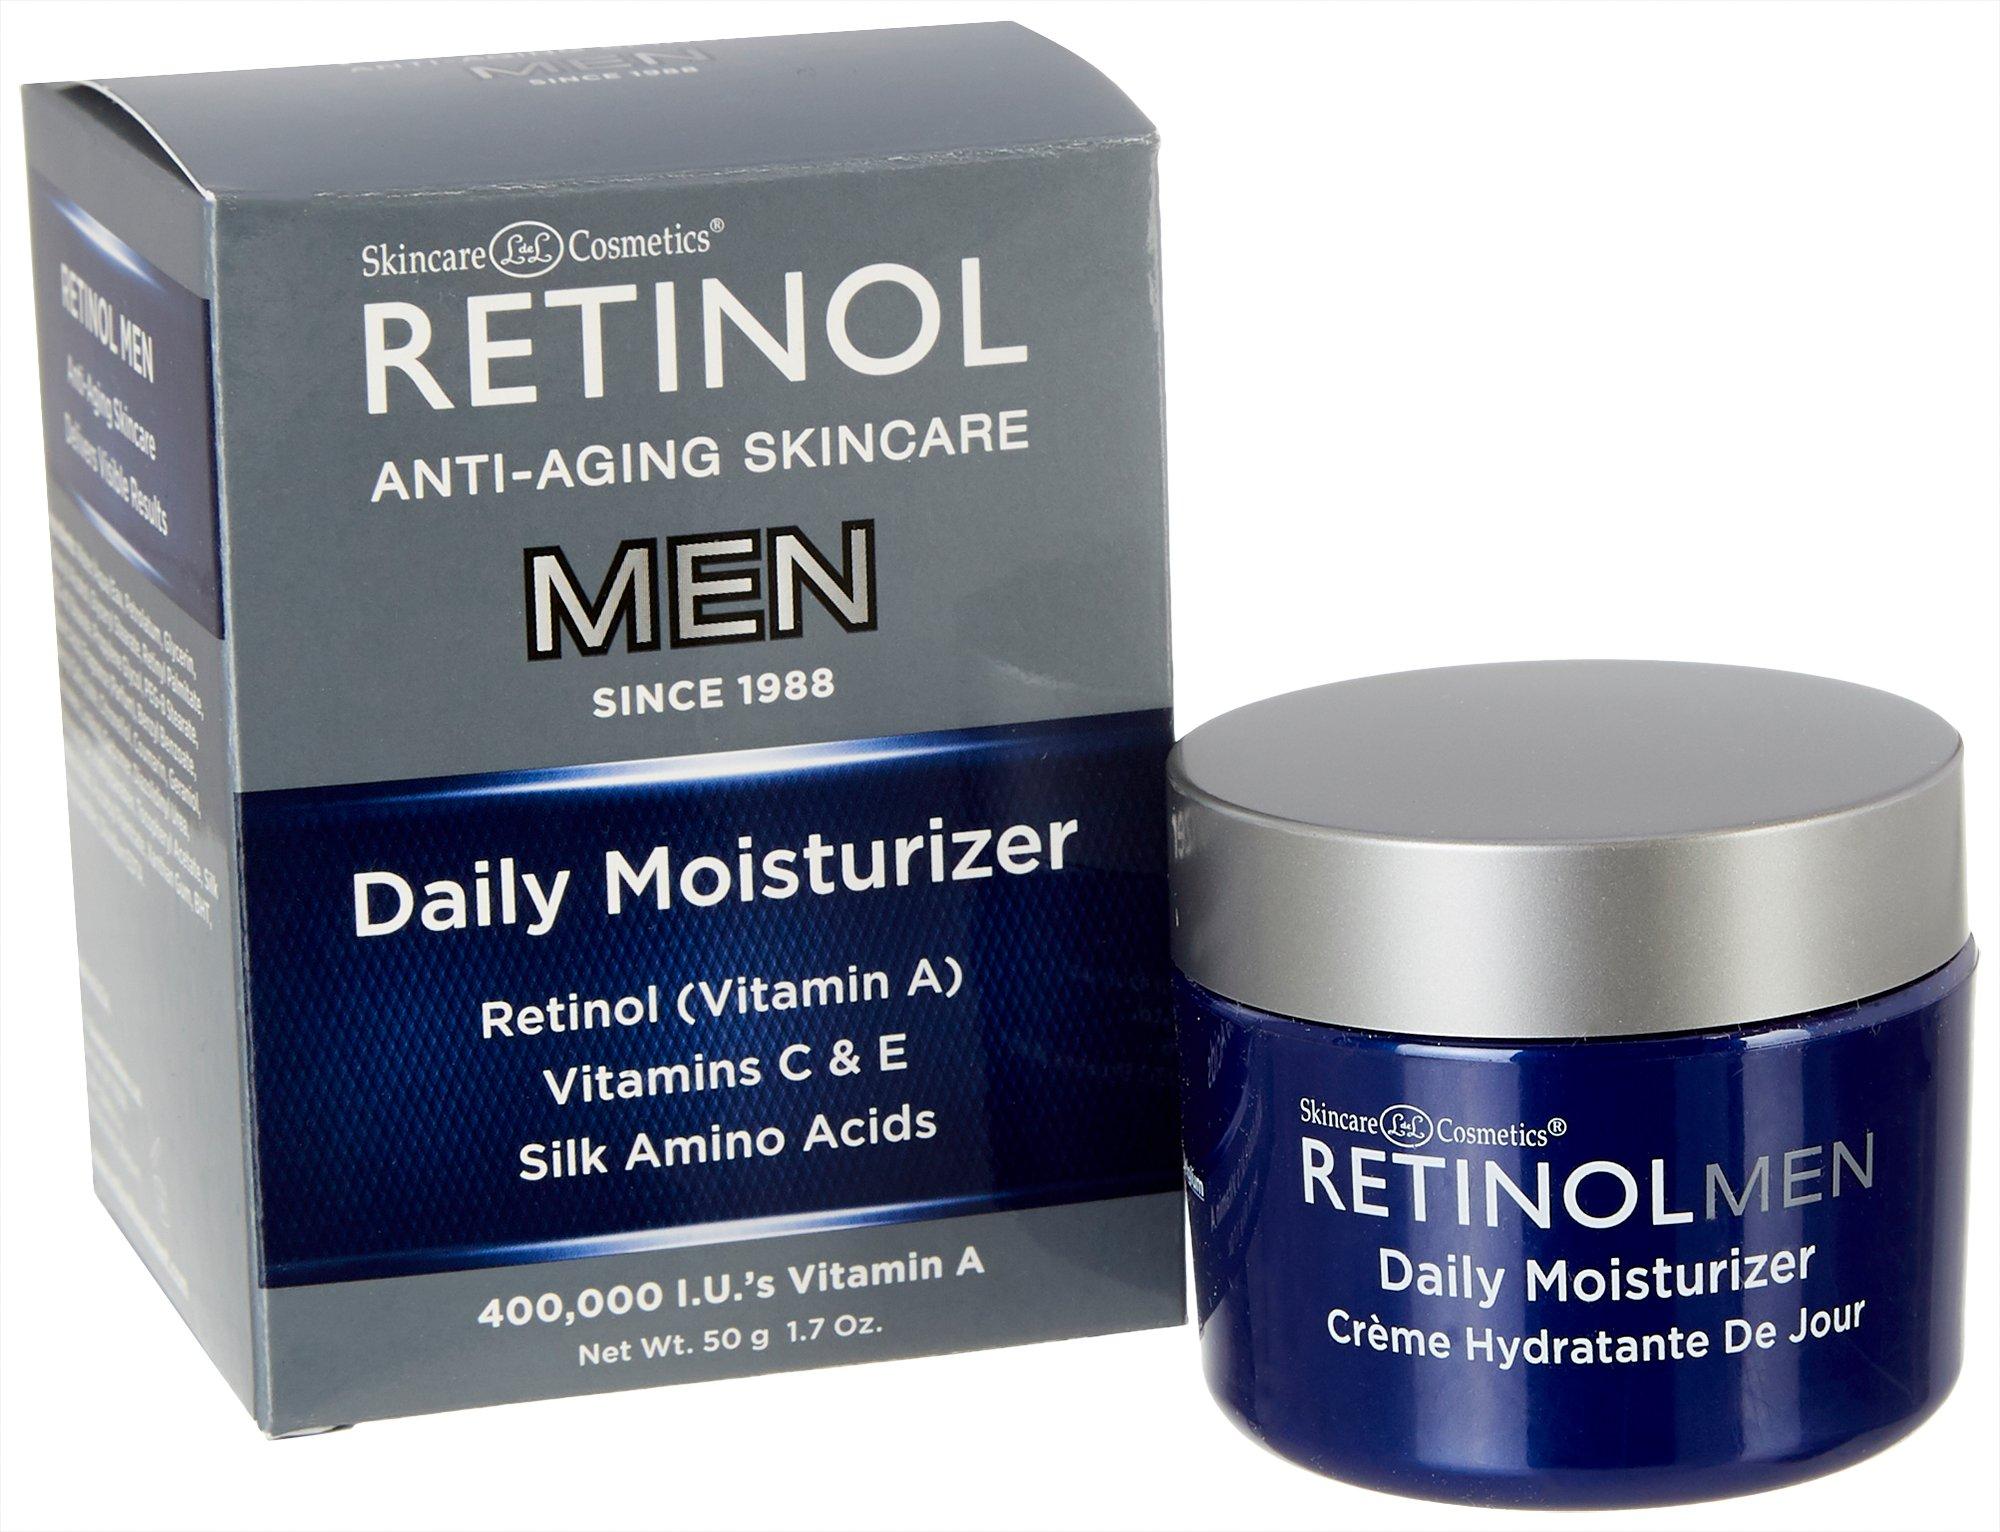 Retinol Mens Anti-Aging Skincare Daily Moisturizer